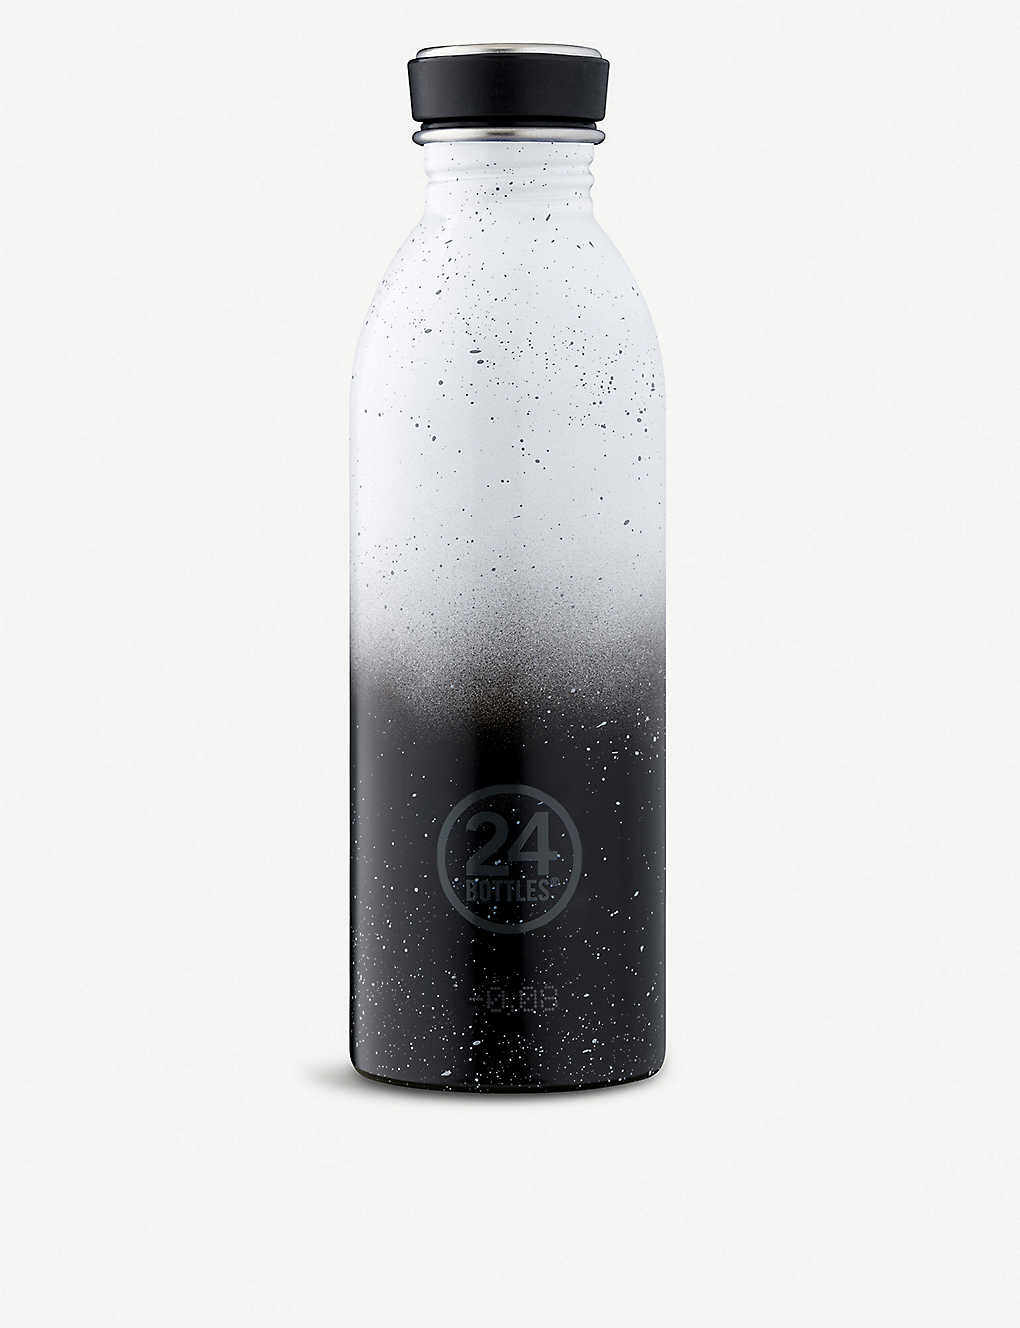 24 BOTTLES的保溫杯一直深受博主們喜愛。常喝暖水對身體好，更可減小經痛。